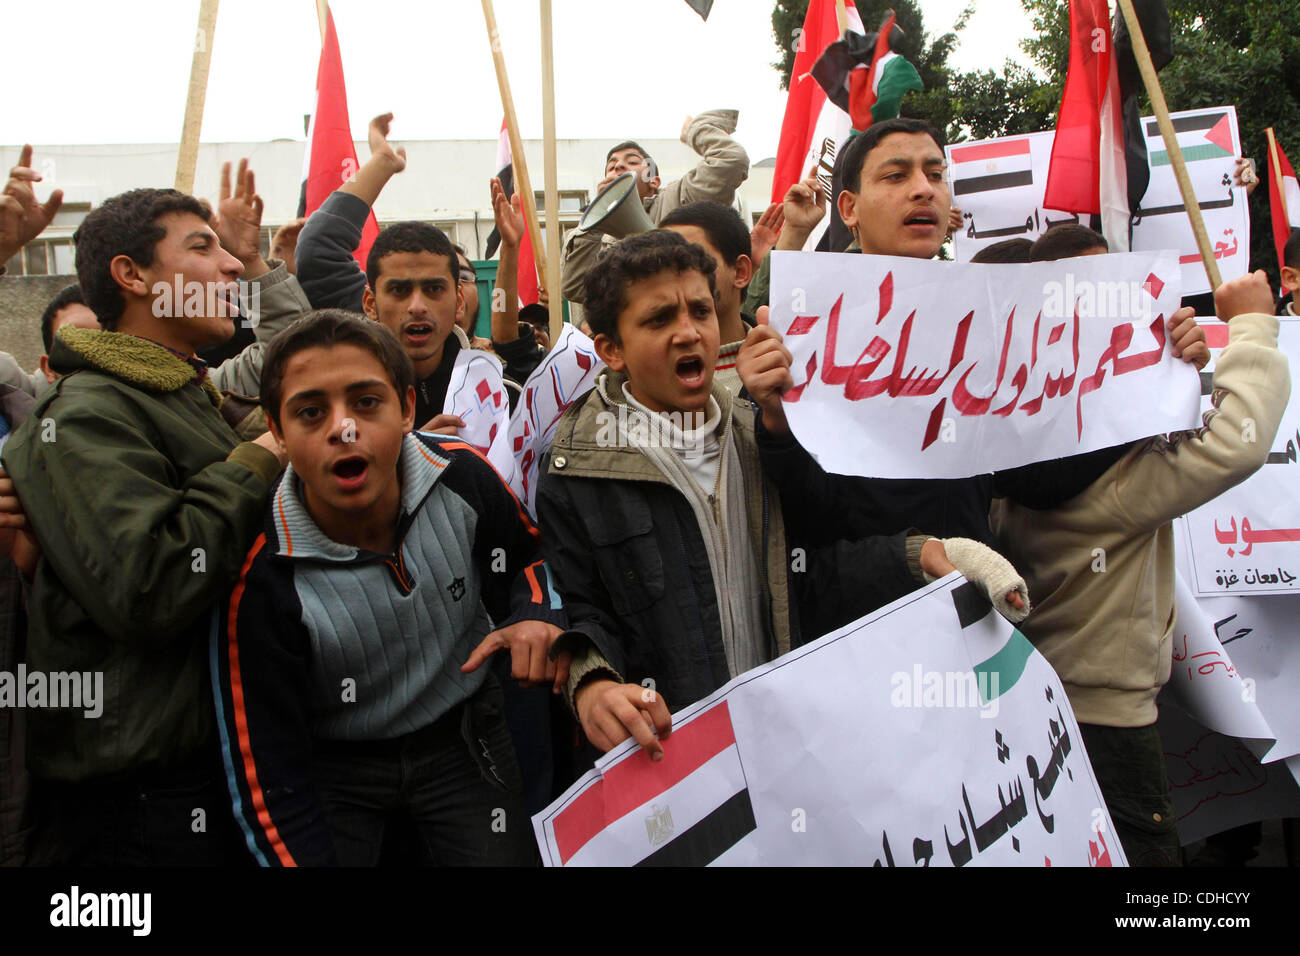 Des manifestants palestiniens vague des drapeaux égyptiens et crier des slogans, lors d'une manifestation devant les bureaux de la mission diplomatique égyptienne à Gaza le 3 février 2011 à l'appui de la manifestations anti-gouvernementales en Egypte appelant à mettre fin au Président Hosni Moubarak a 30 ans. Photo par Ashra Banque D'Images